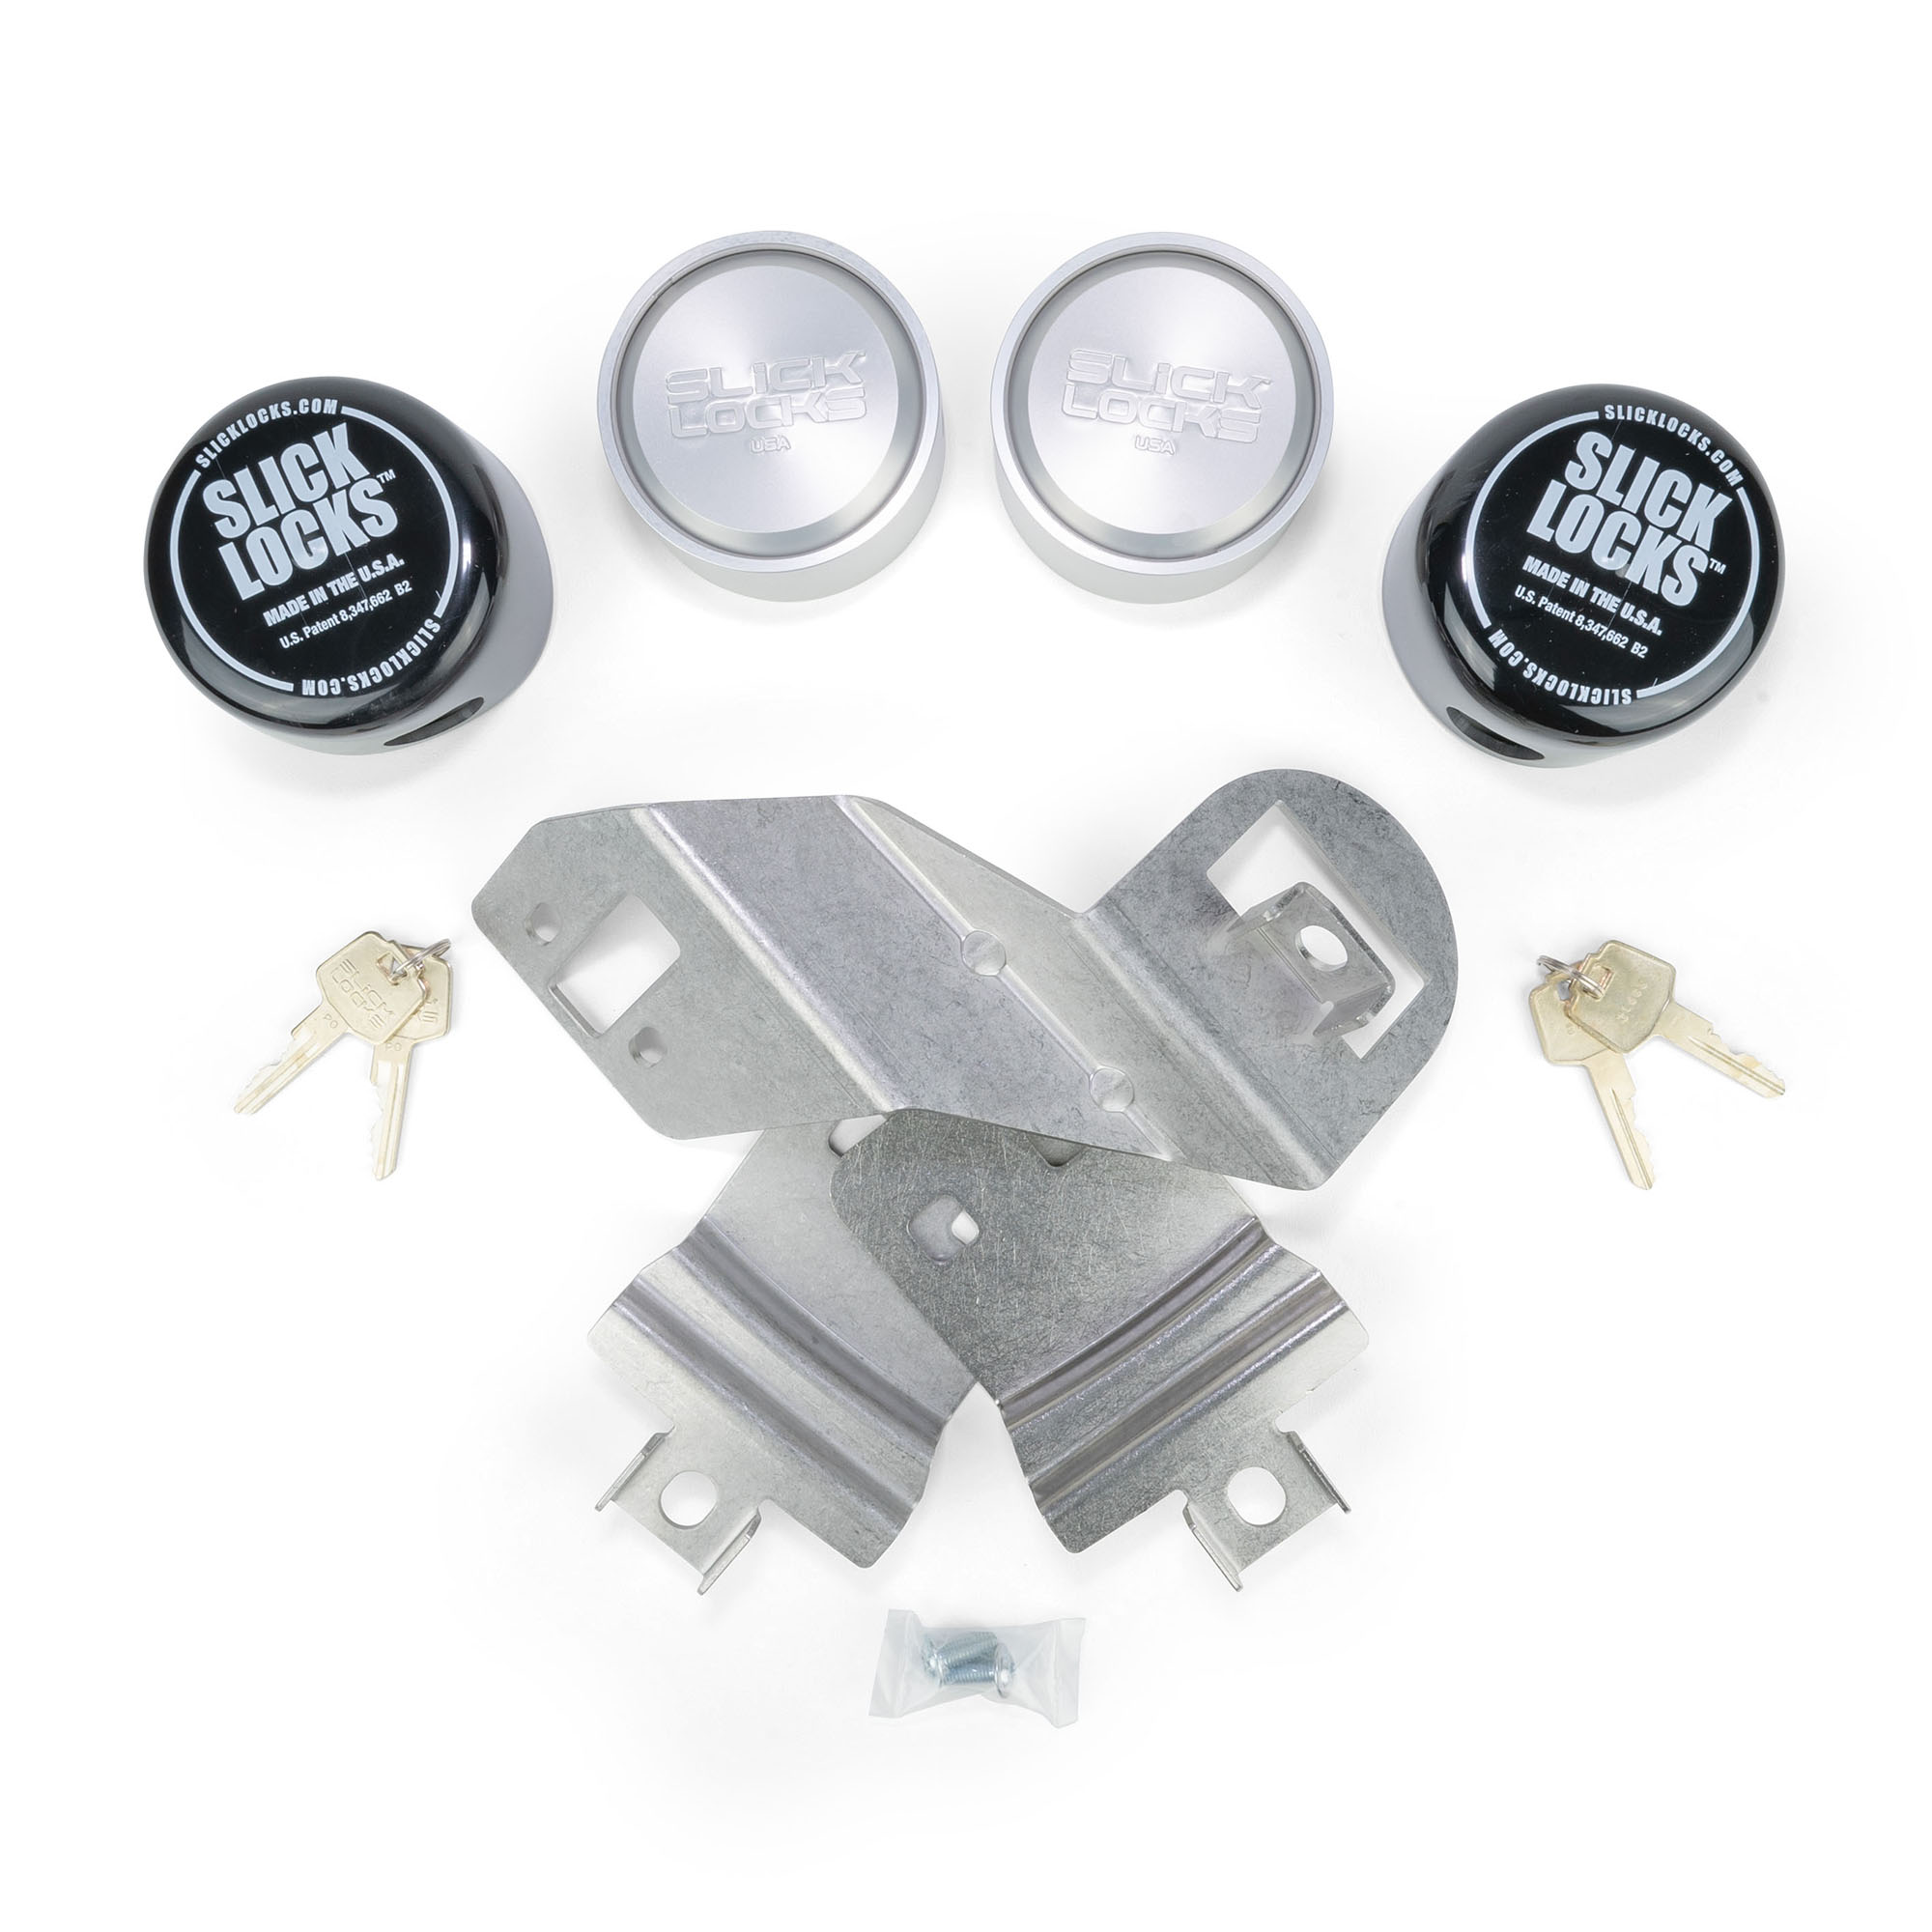 Slick Locks Door Lock Kit for Mercedes Sprinter Vans (2007-2018) Slick  Locks Upfit Supply